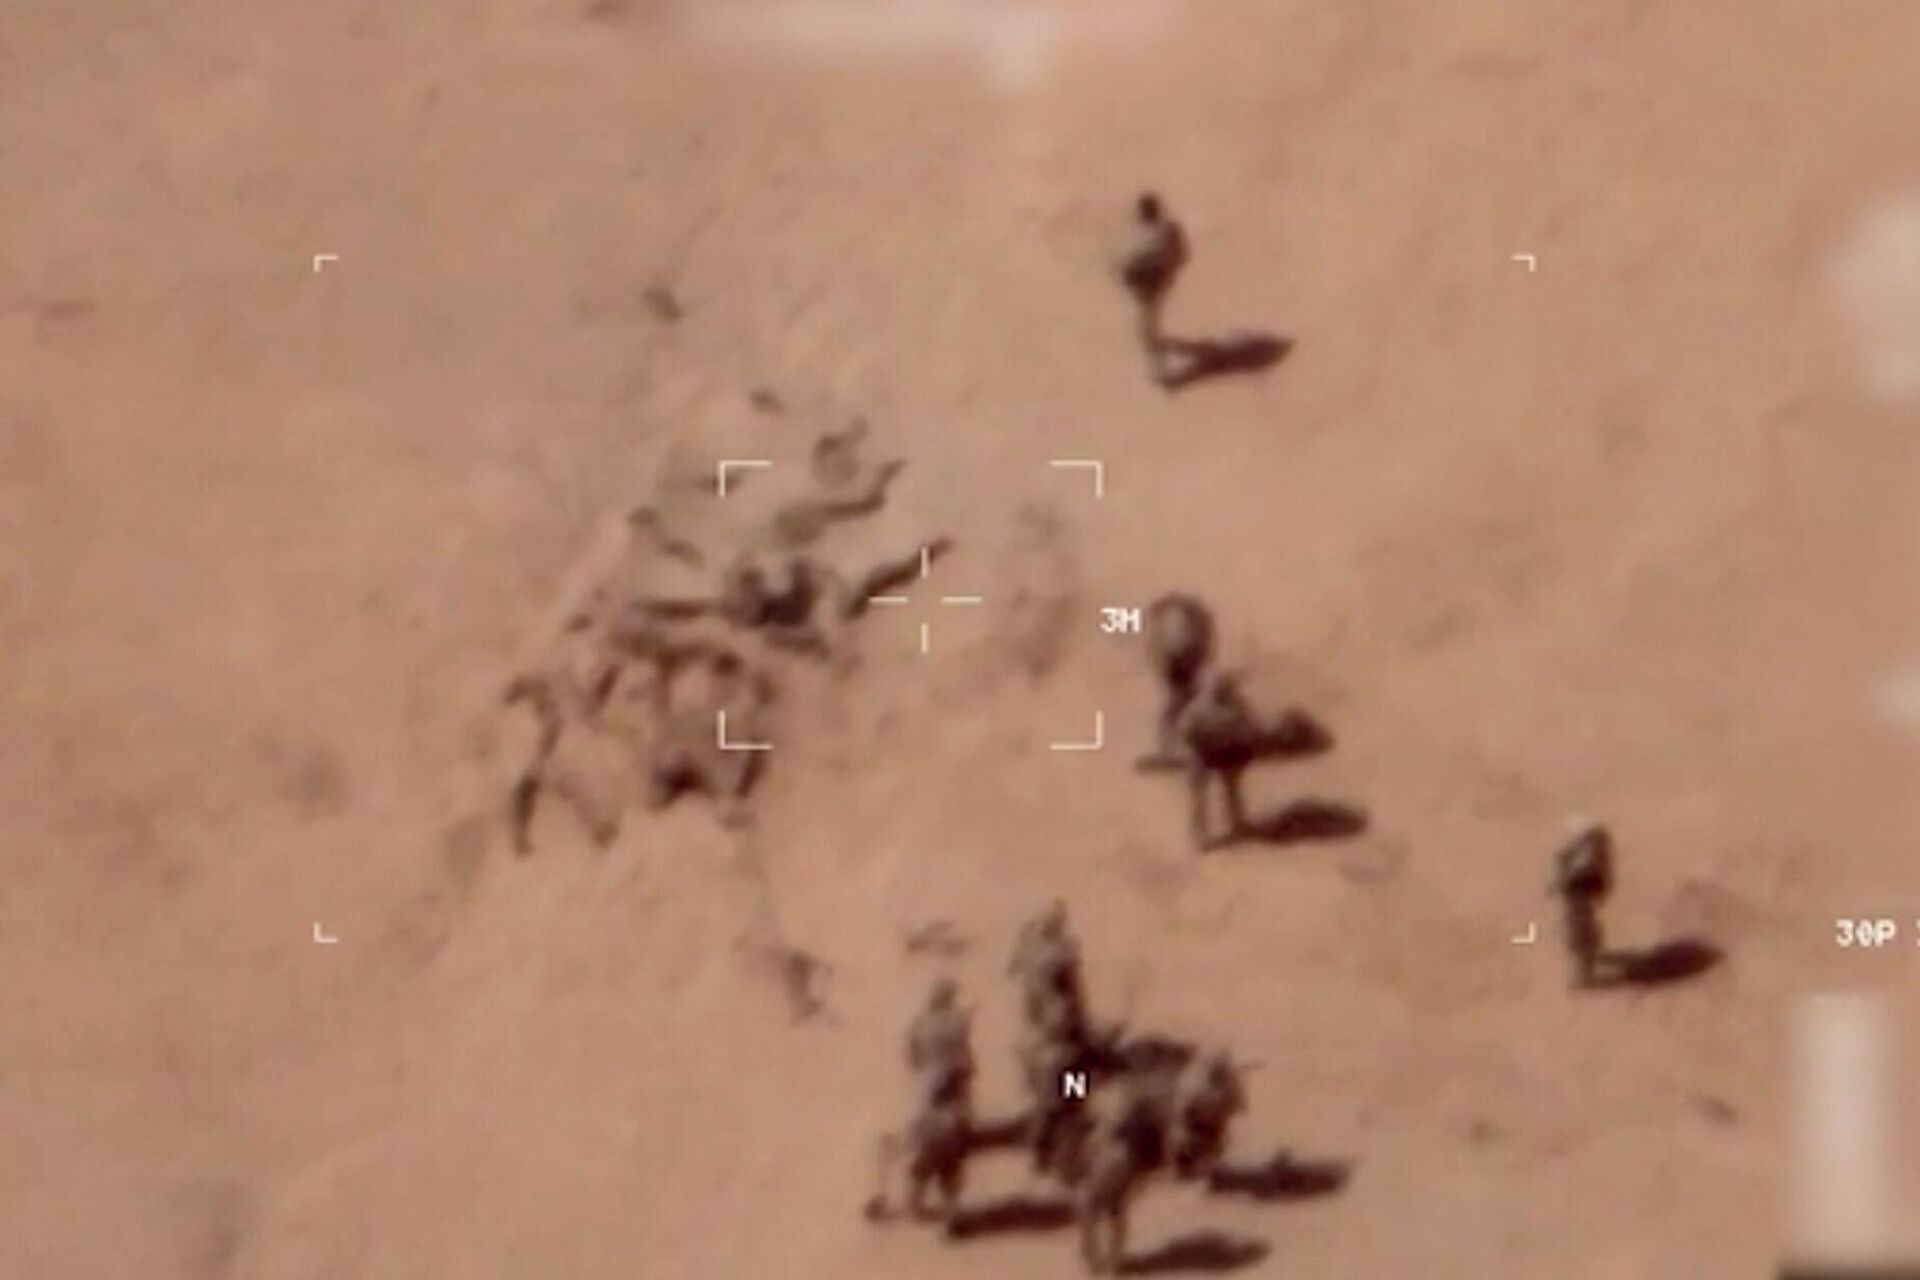 Trích từ video cho thấy cảnh binh sĩ chôn cất tử thi gần căn cứ quân đội ở miền bắc Mali - Sputnik Việt Nam, 1920, 05.05.2022